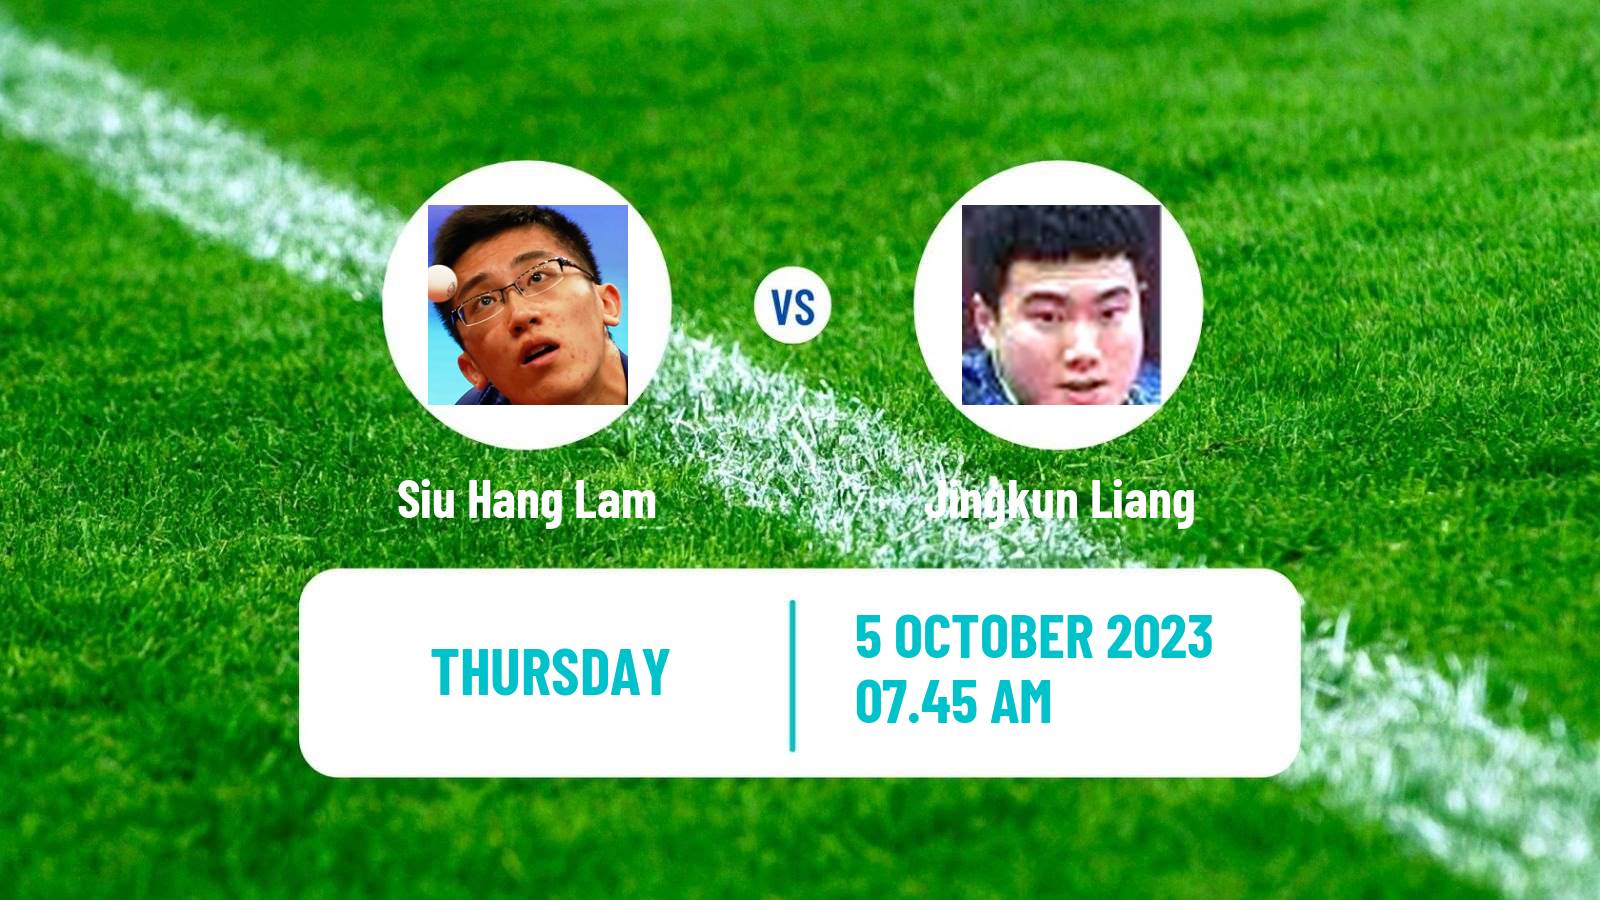 Table tennis Wtt Star Contender Lanzhou Men Siu Hang Lam - Jingkun Liang